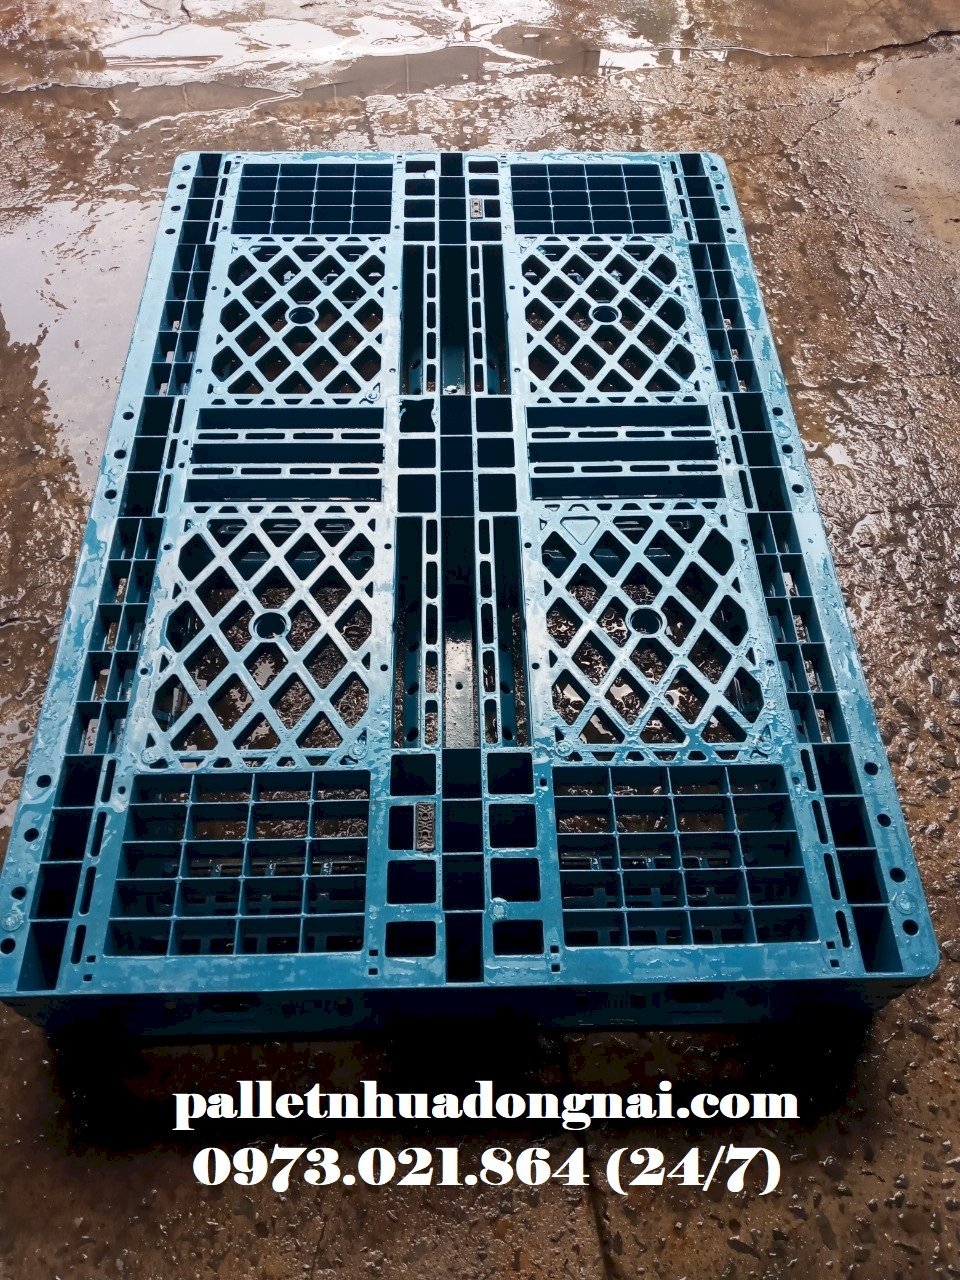 Pallet nhựa cũ tại Trà Vinh, liên hệ 0973021864 (24/7)